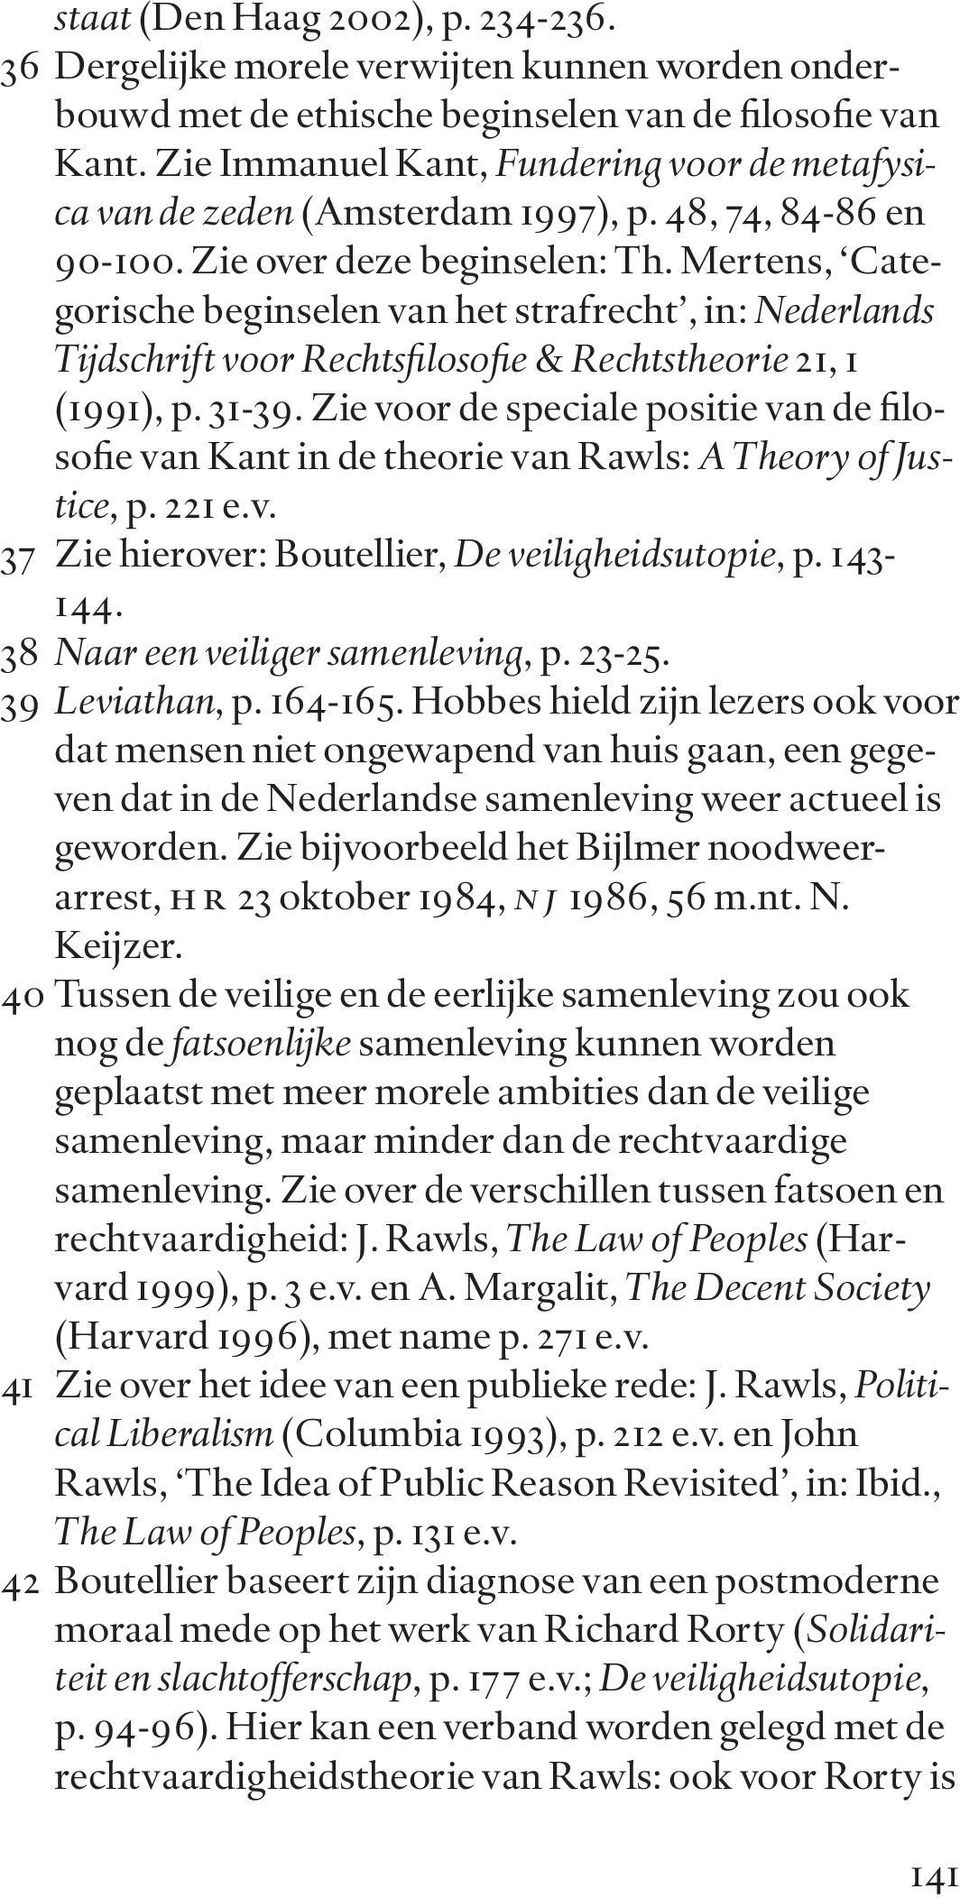 Mertens, Categorische beginselen van het strafrecht, in: Nederlands Tijdschrift voor Rechtsfilosofie & Rechtstheorie 21, 1 (1991), p. 31-39.